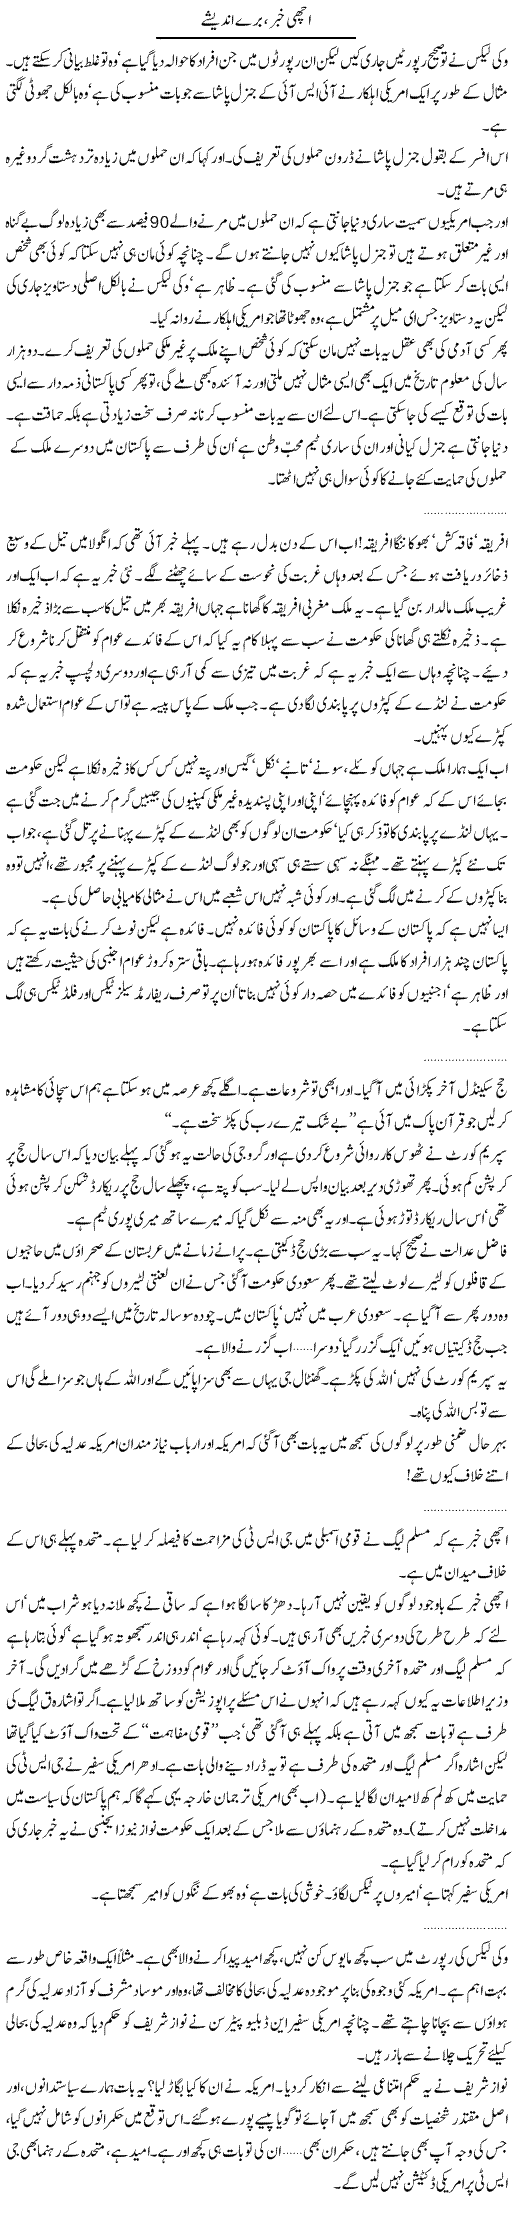 Good News Express Column Abdullah Tariq 8 December 2010